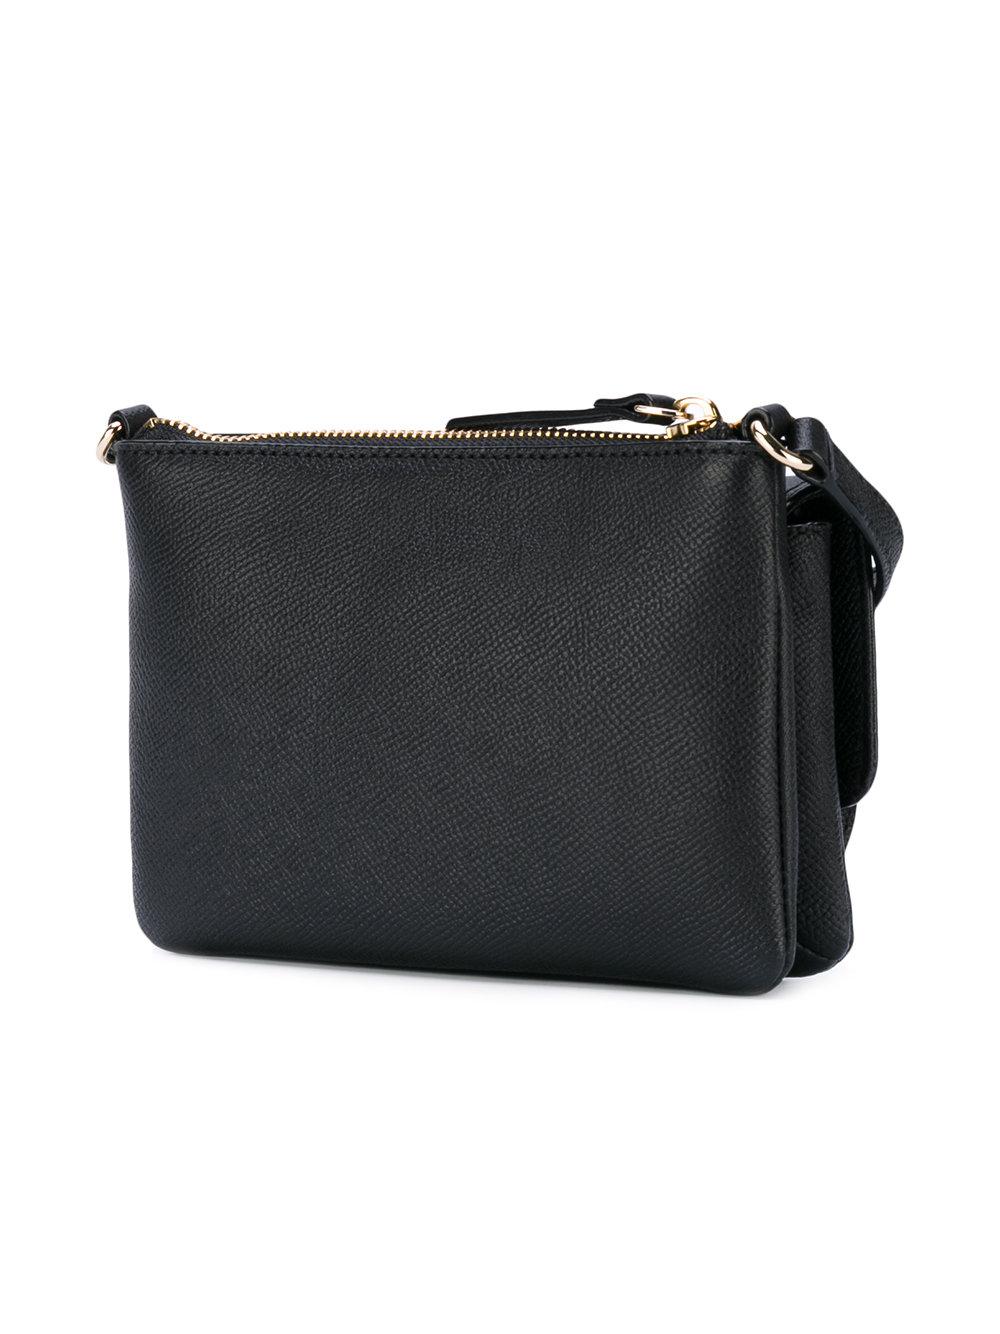 Kate Spade Leather Logo Print Shoulder Bag in Black - Lyst